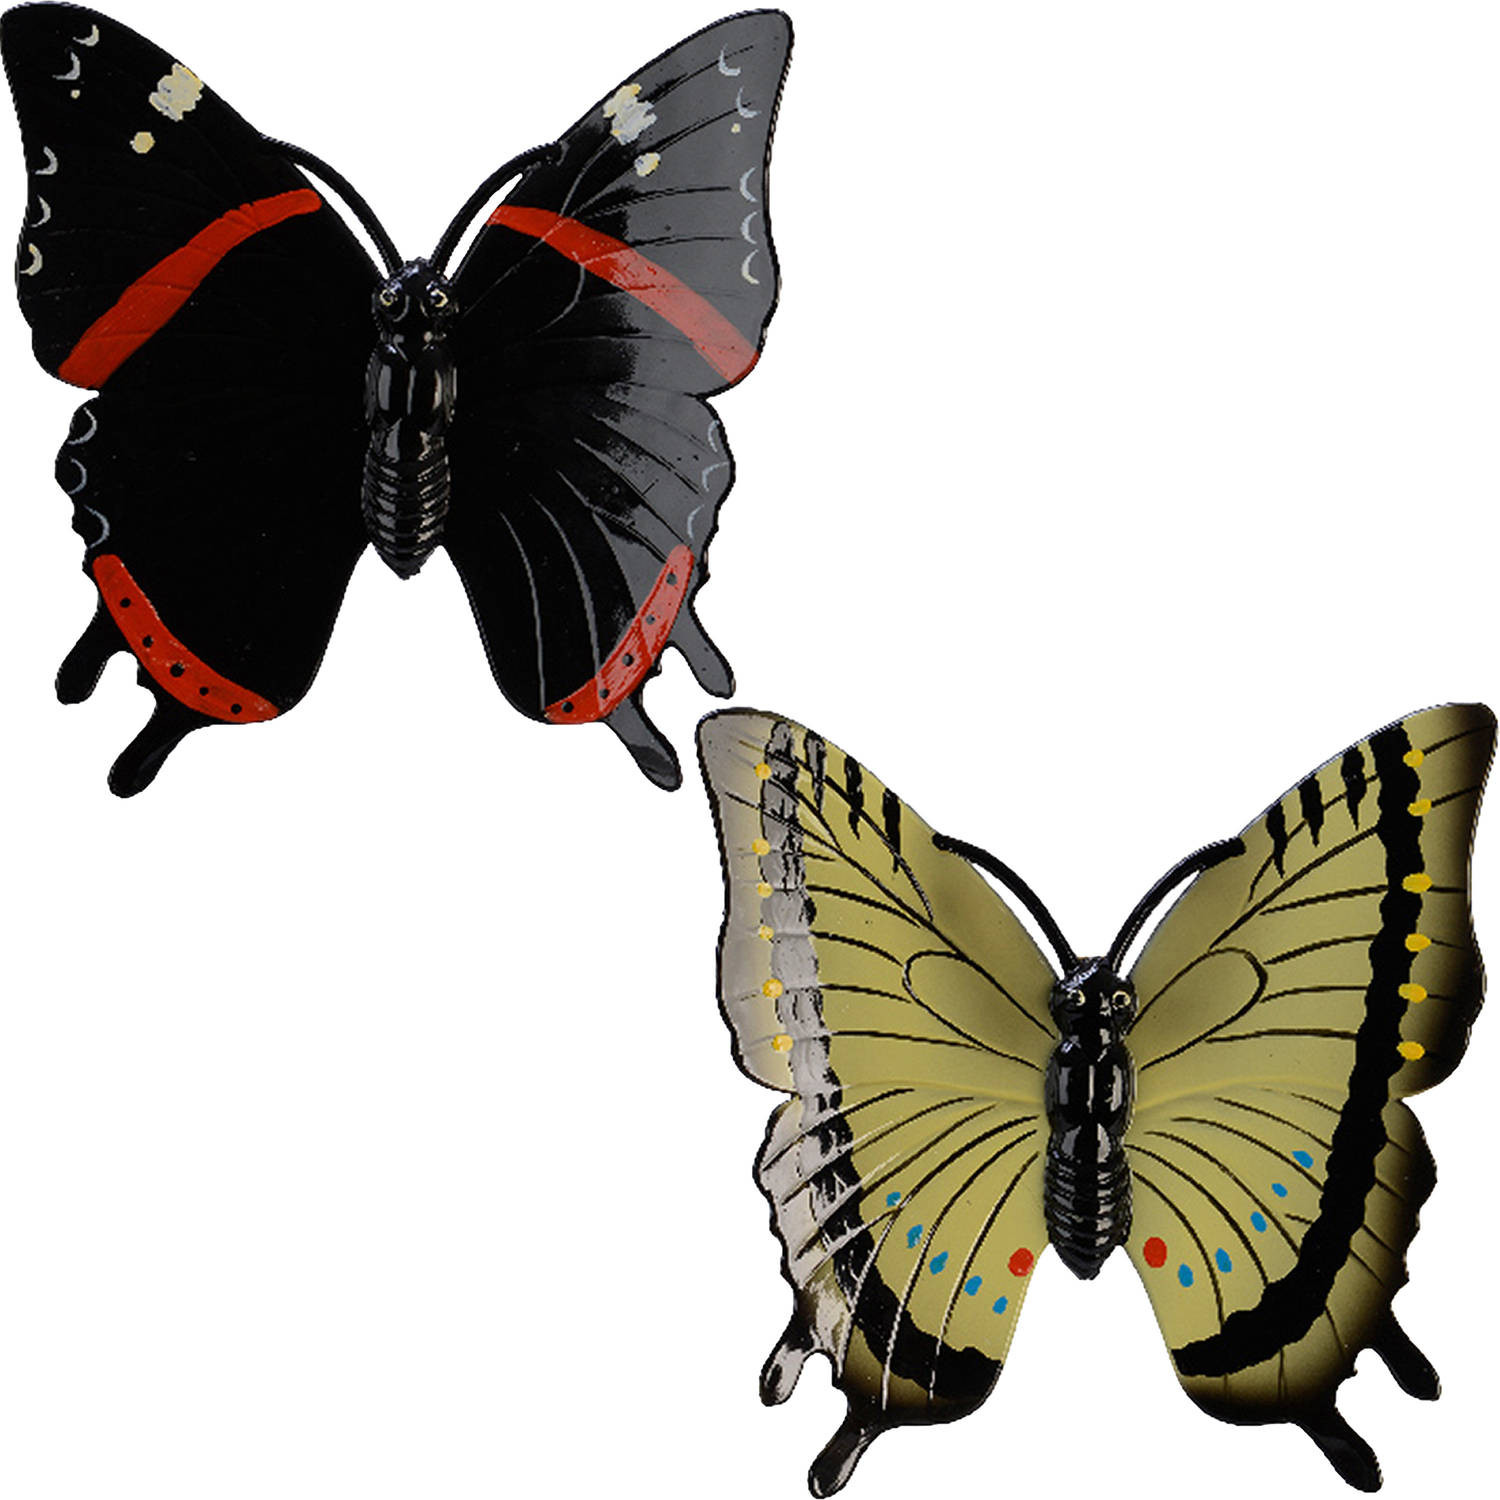 2x stuks tuin decoratie vlinders - kunststof - geel - zwart - 24 x 24 cm - Tuinbeelden